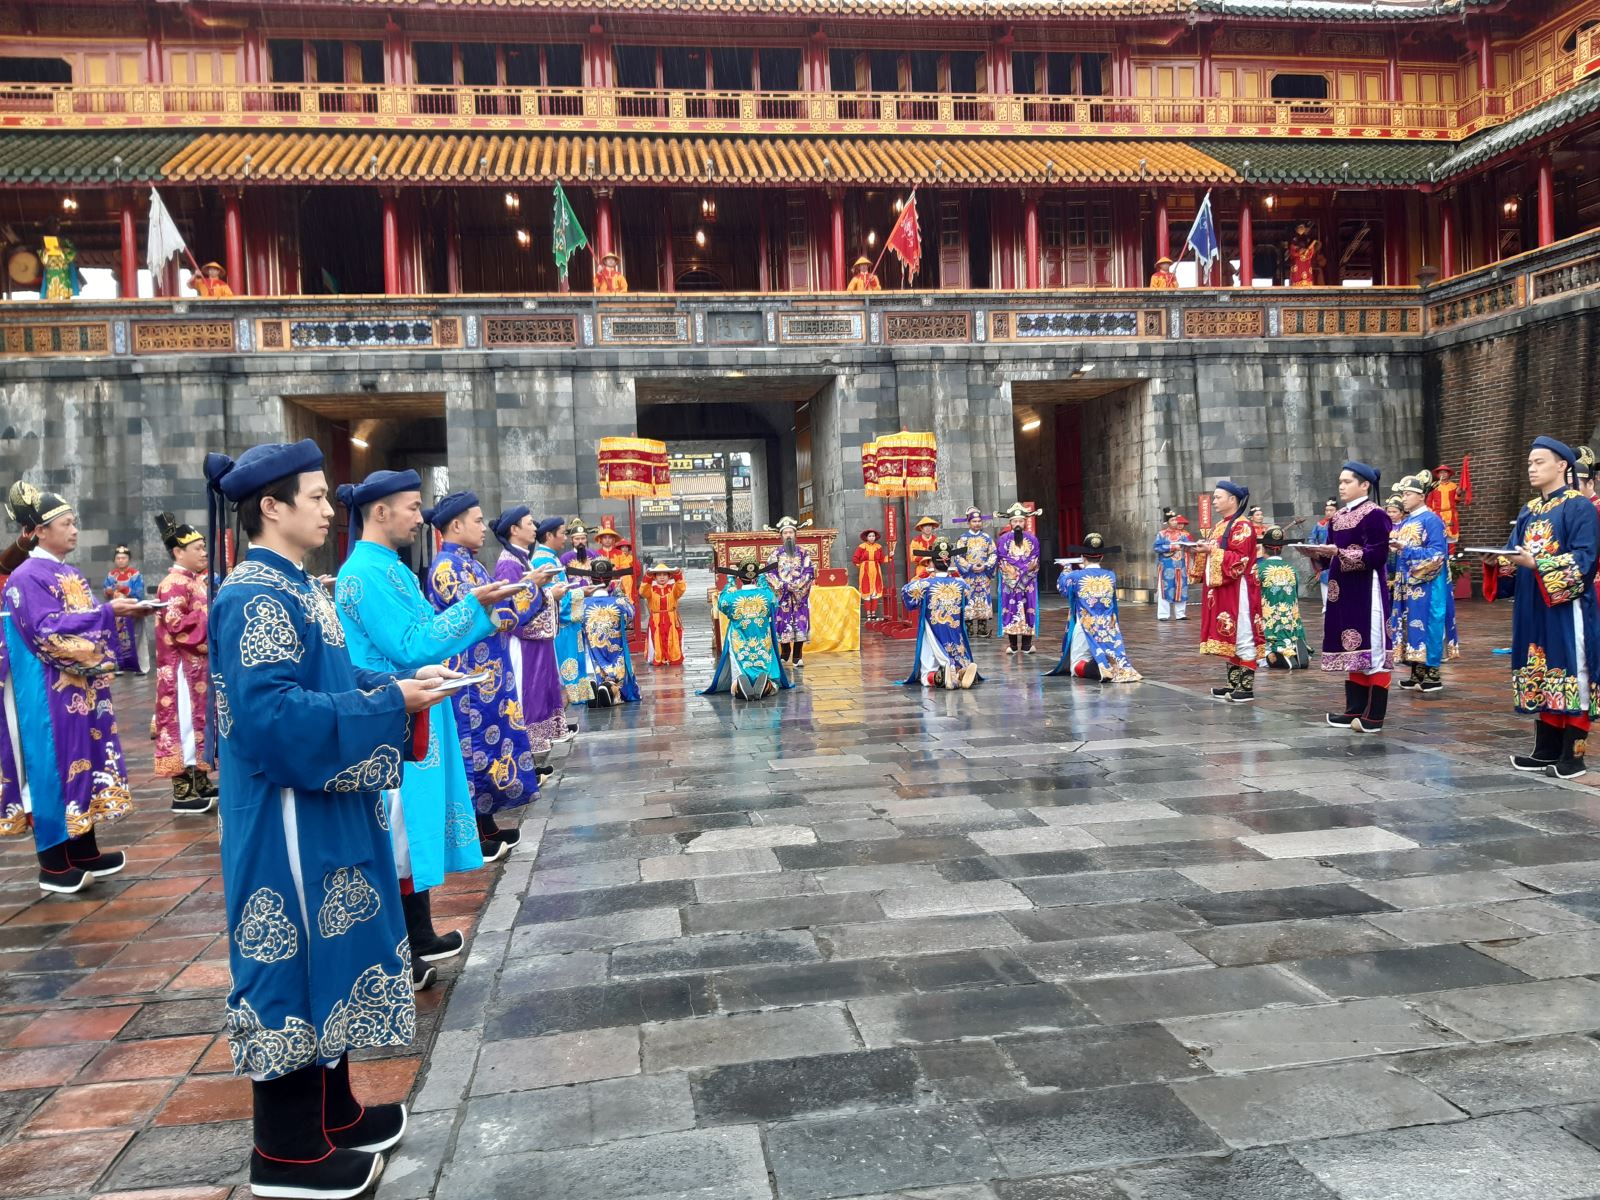 Lễ Ban Sóc triều Nguyễn là Lễ phát lịch năm mới, lịch được tiến công vào Hoàng cung, sau đó phát cho các quan địa phương đưa về phân phát cho người dân dùng.